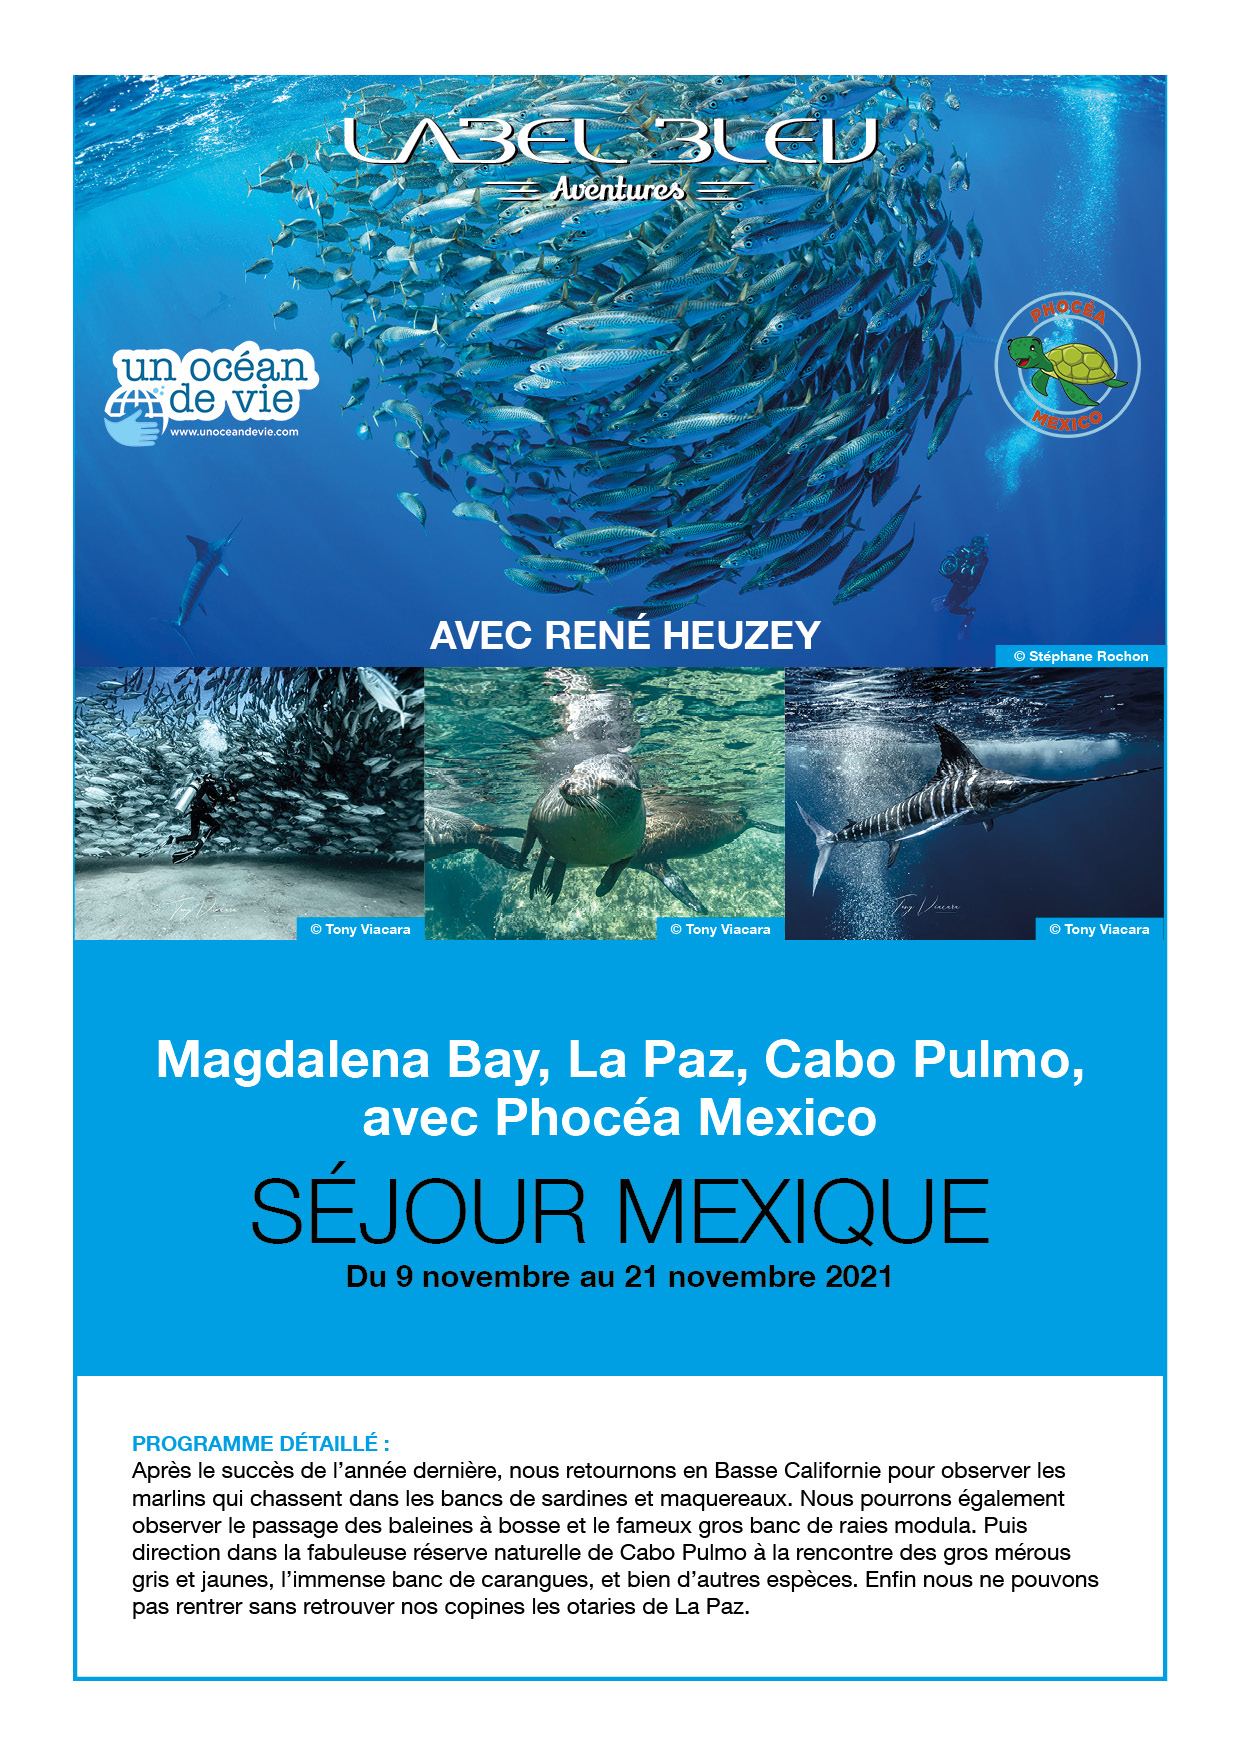 Séjour plongée Mexique avec René Heuzey